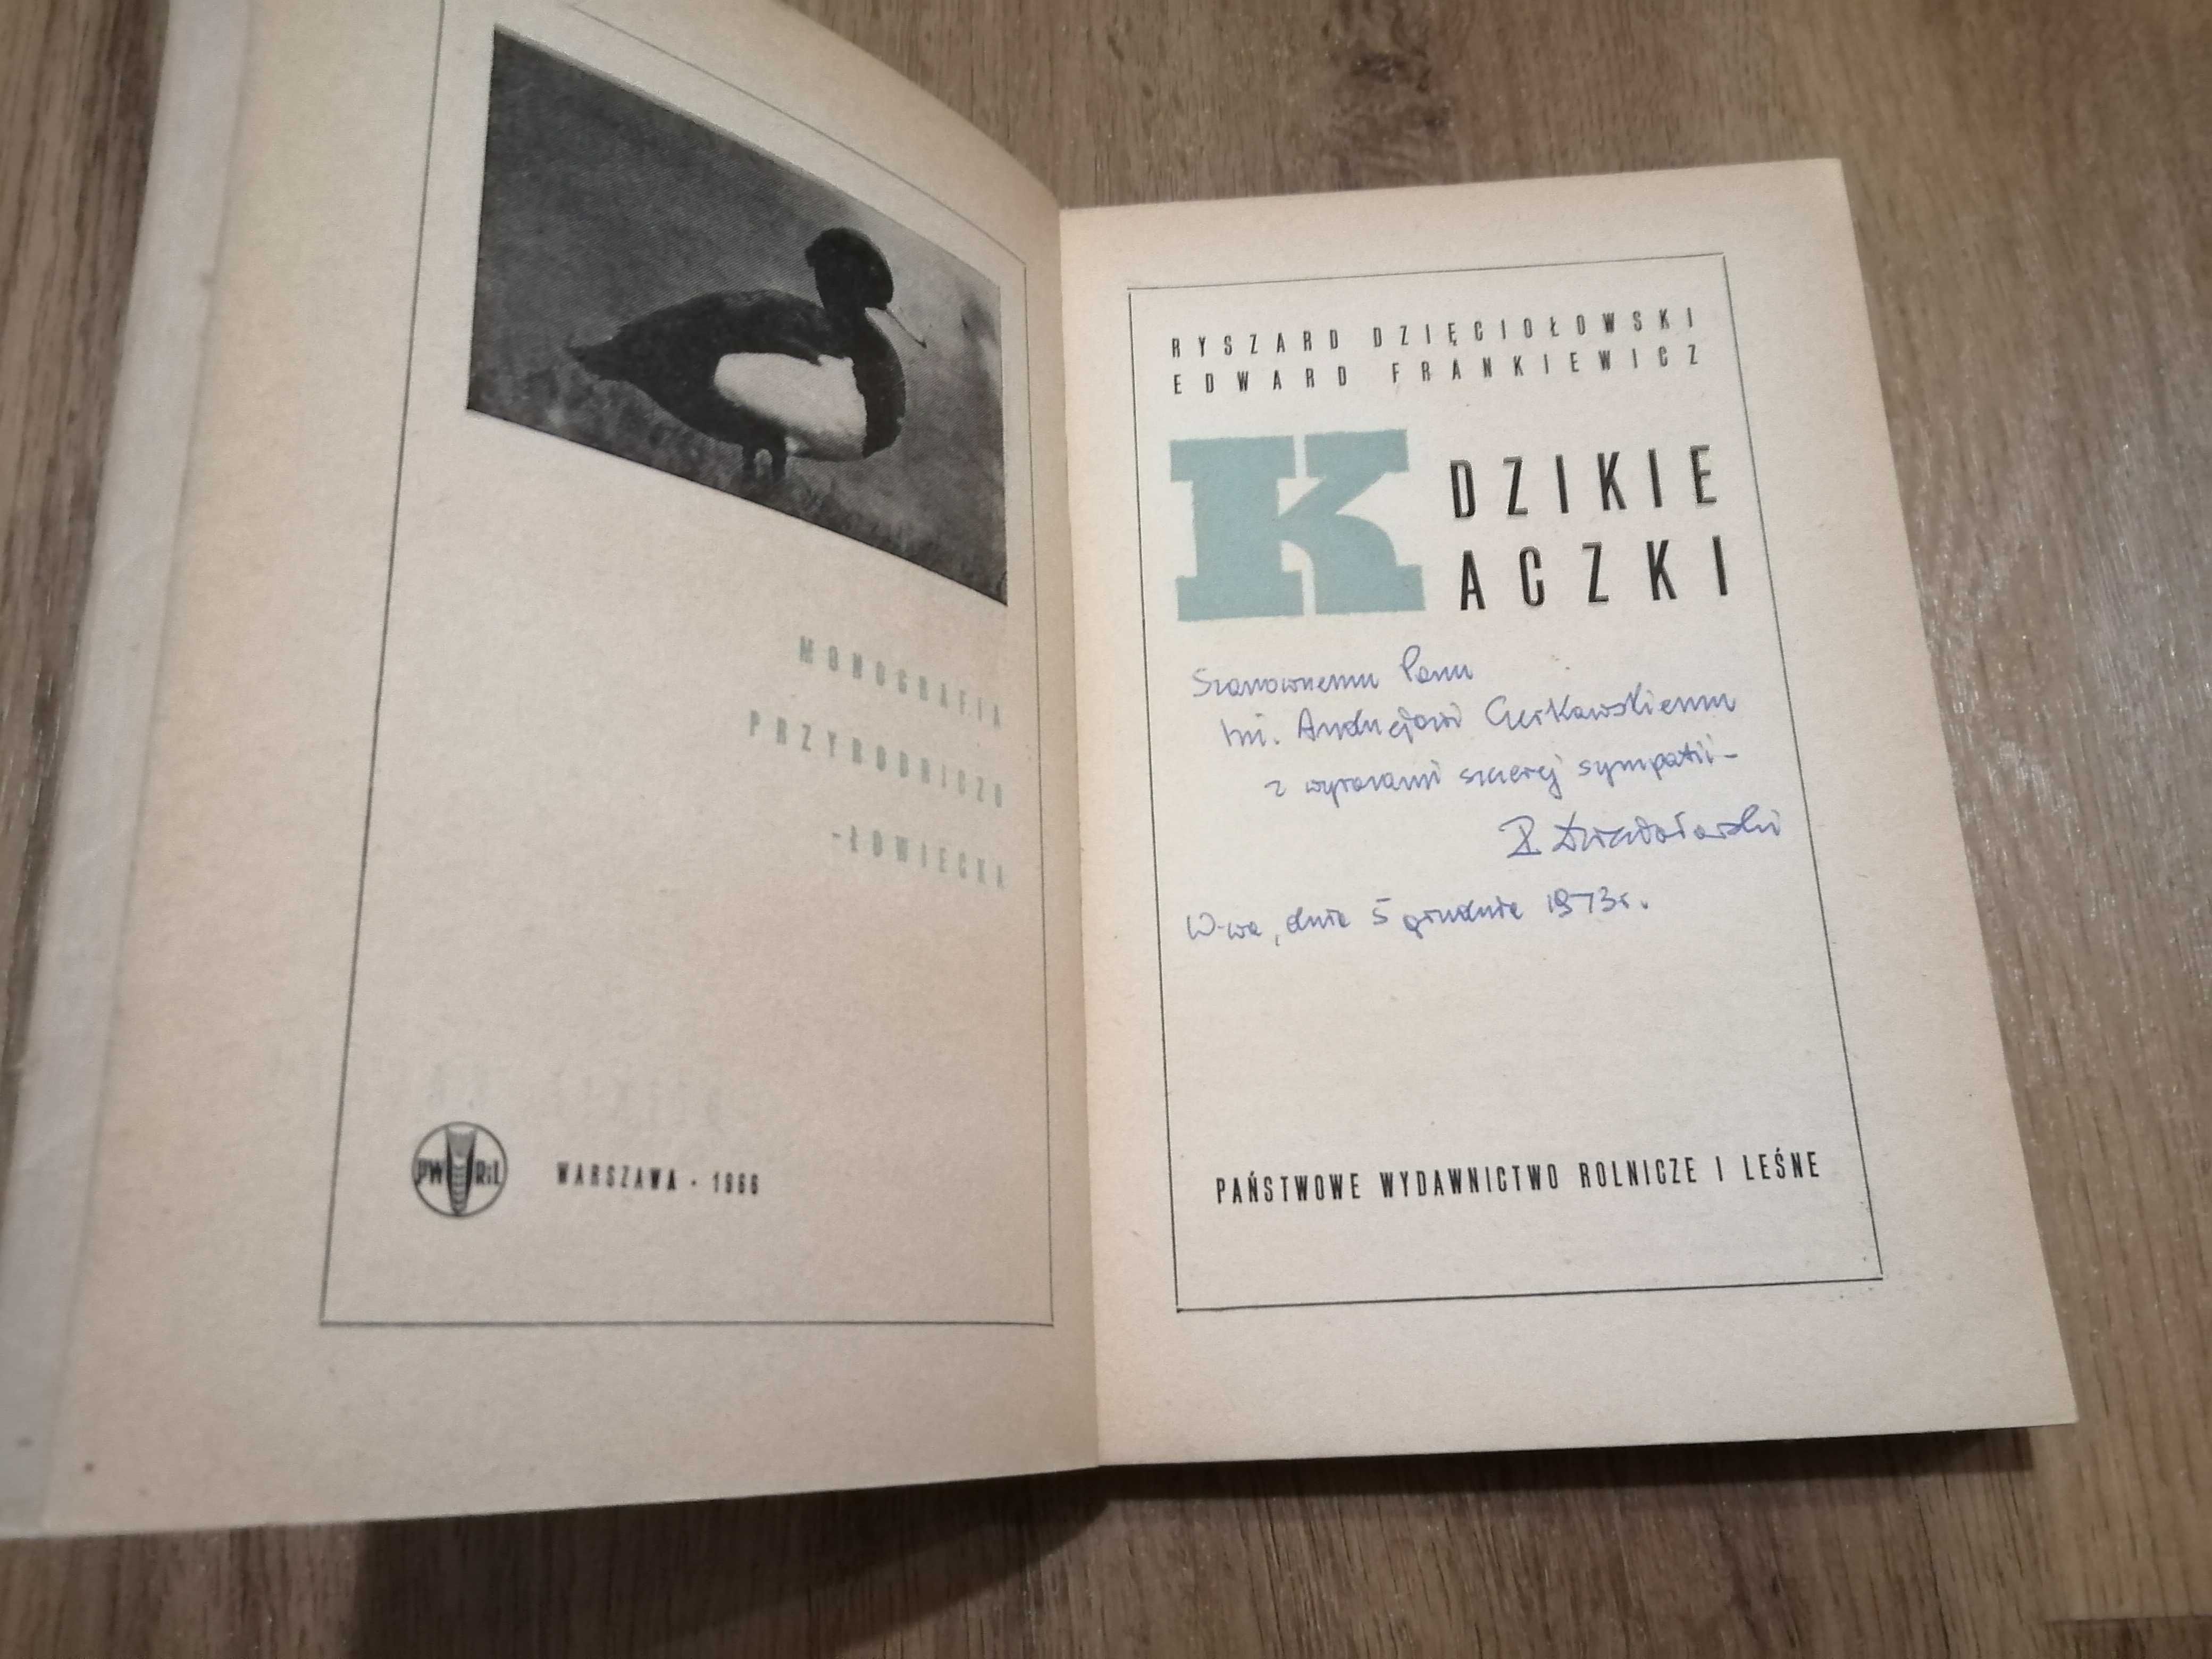 Dzięciołowski, Frankiewicz, Dzikie kaczki, 1966